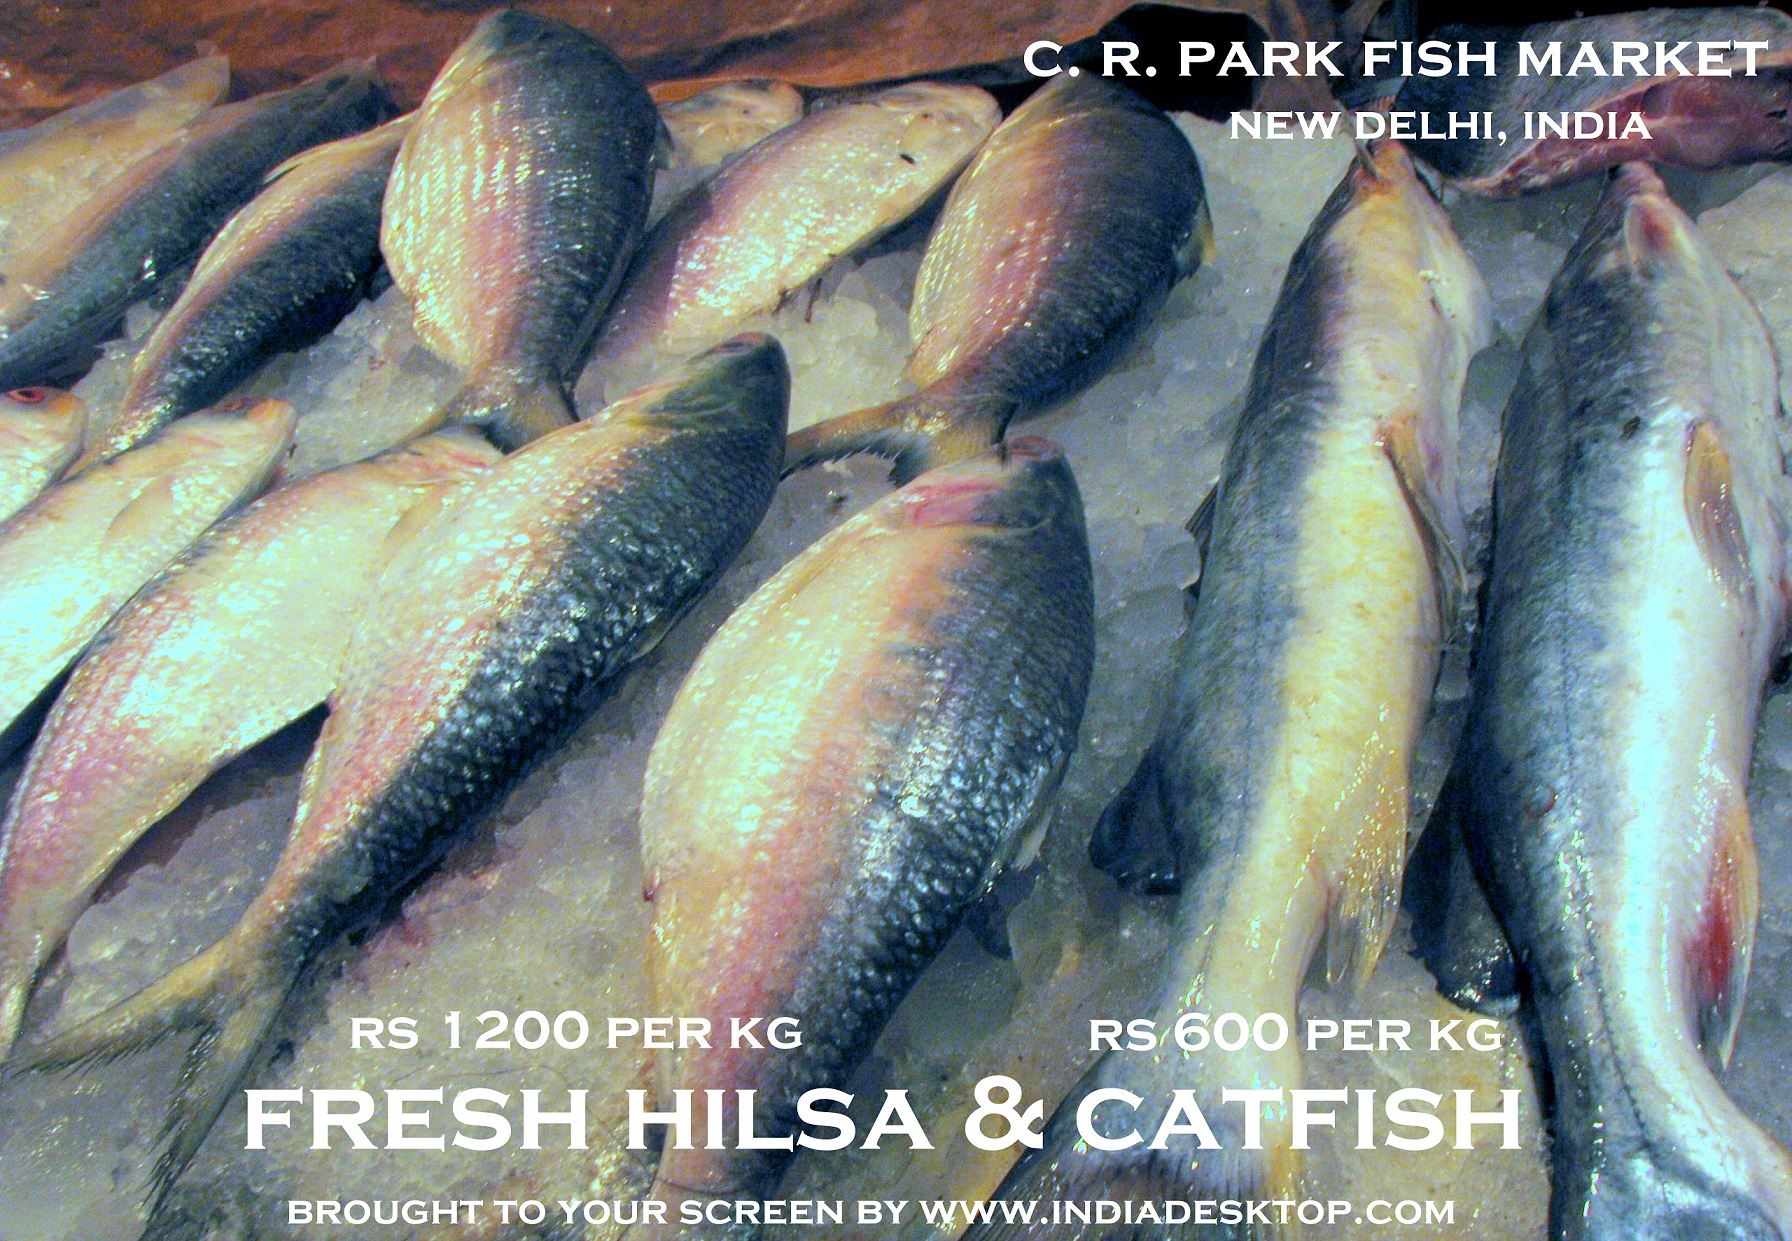 Fish Market C. R. Park